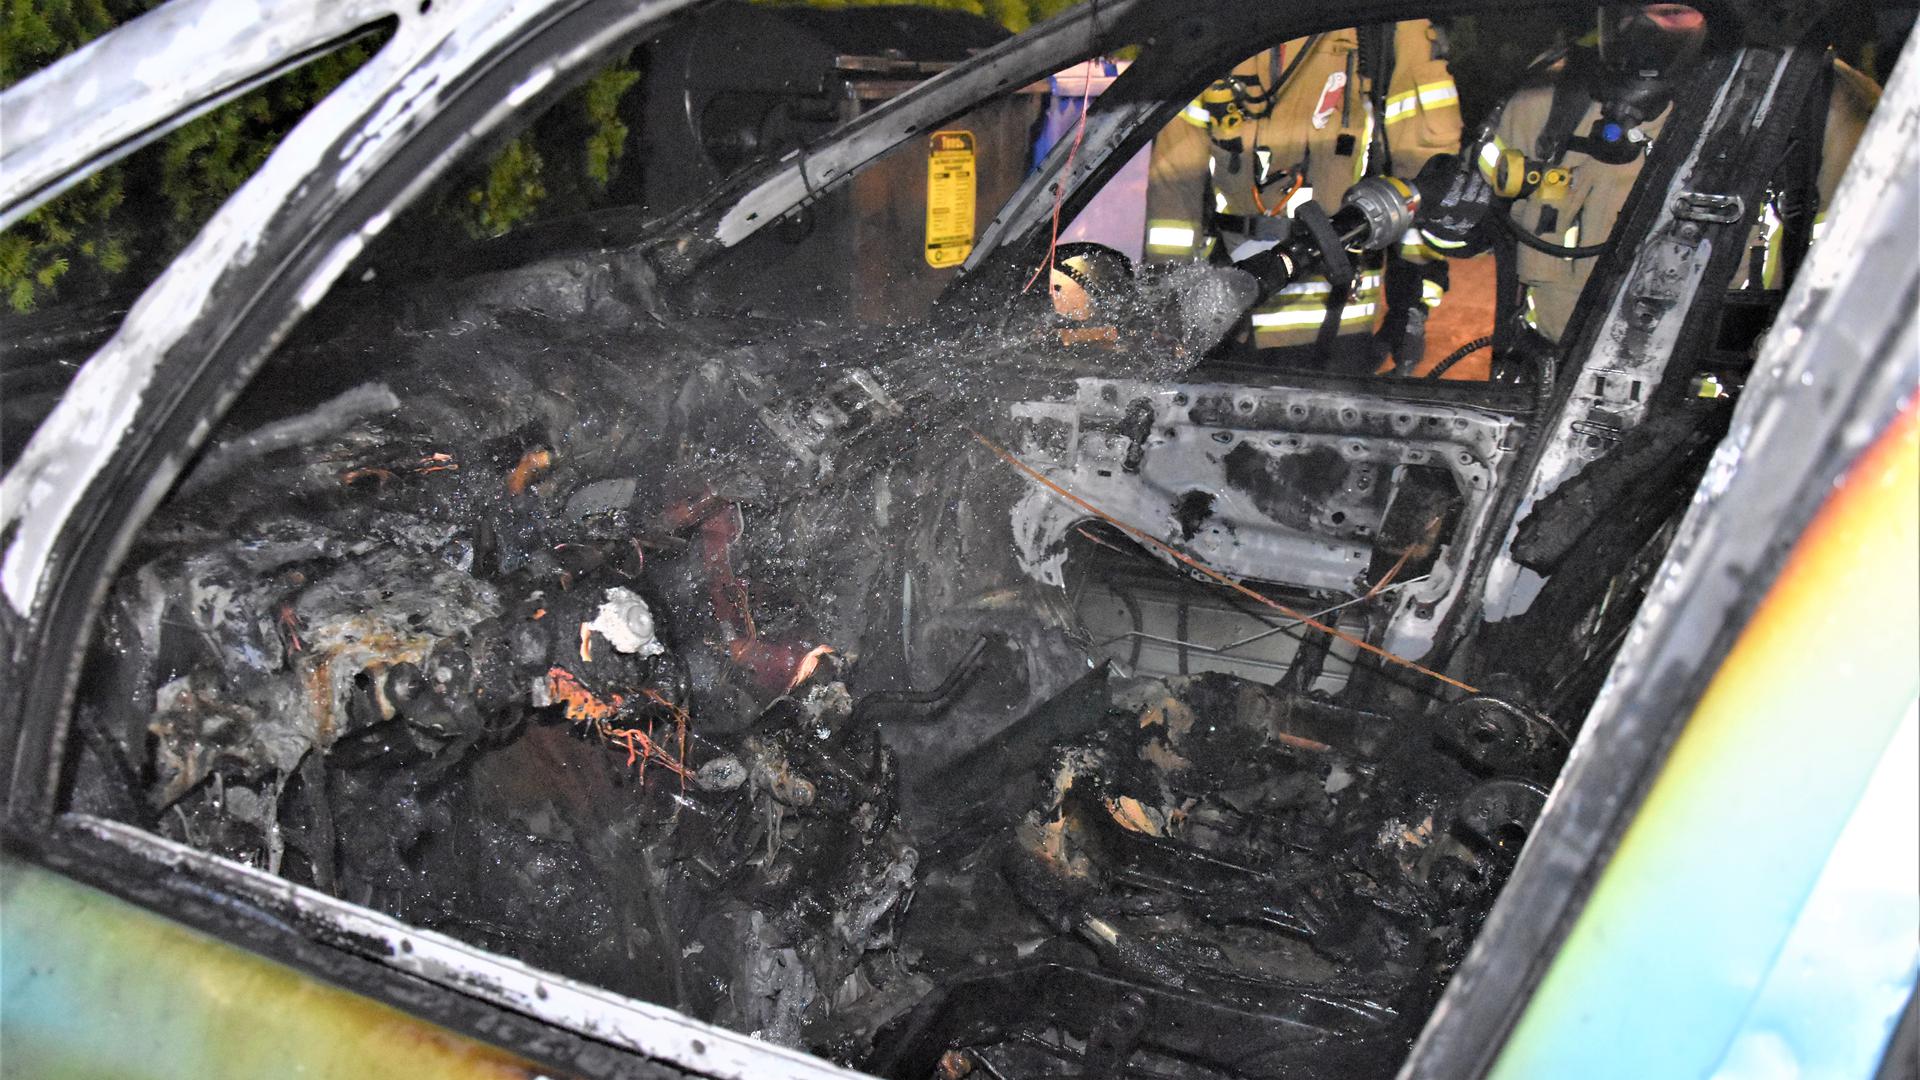 Der Schaden ist immens: Die Flammen haben den kompletten Innenraum des Autos zerstört.